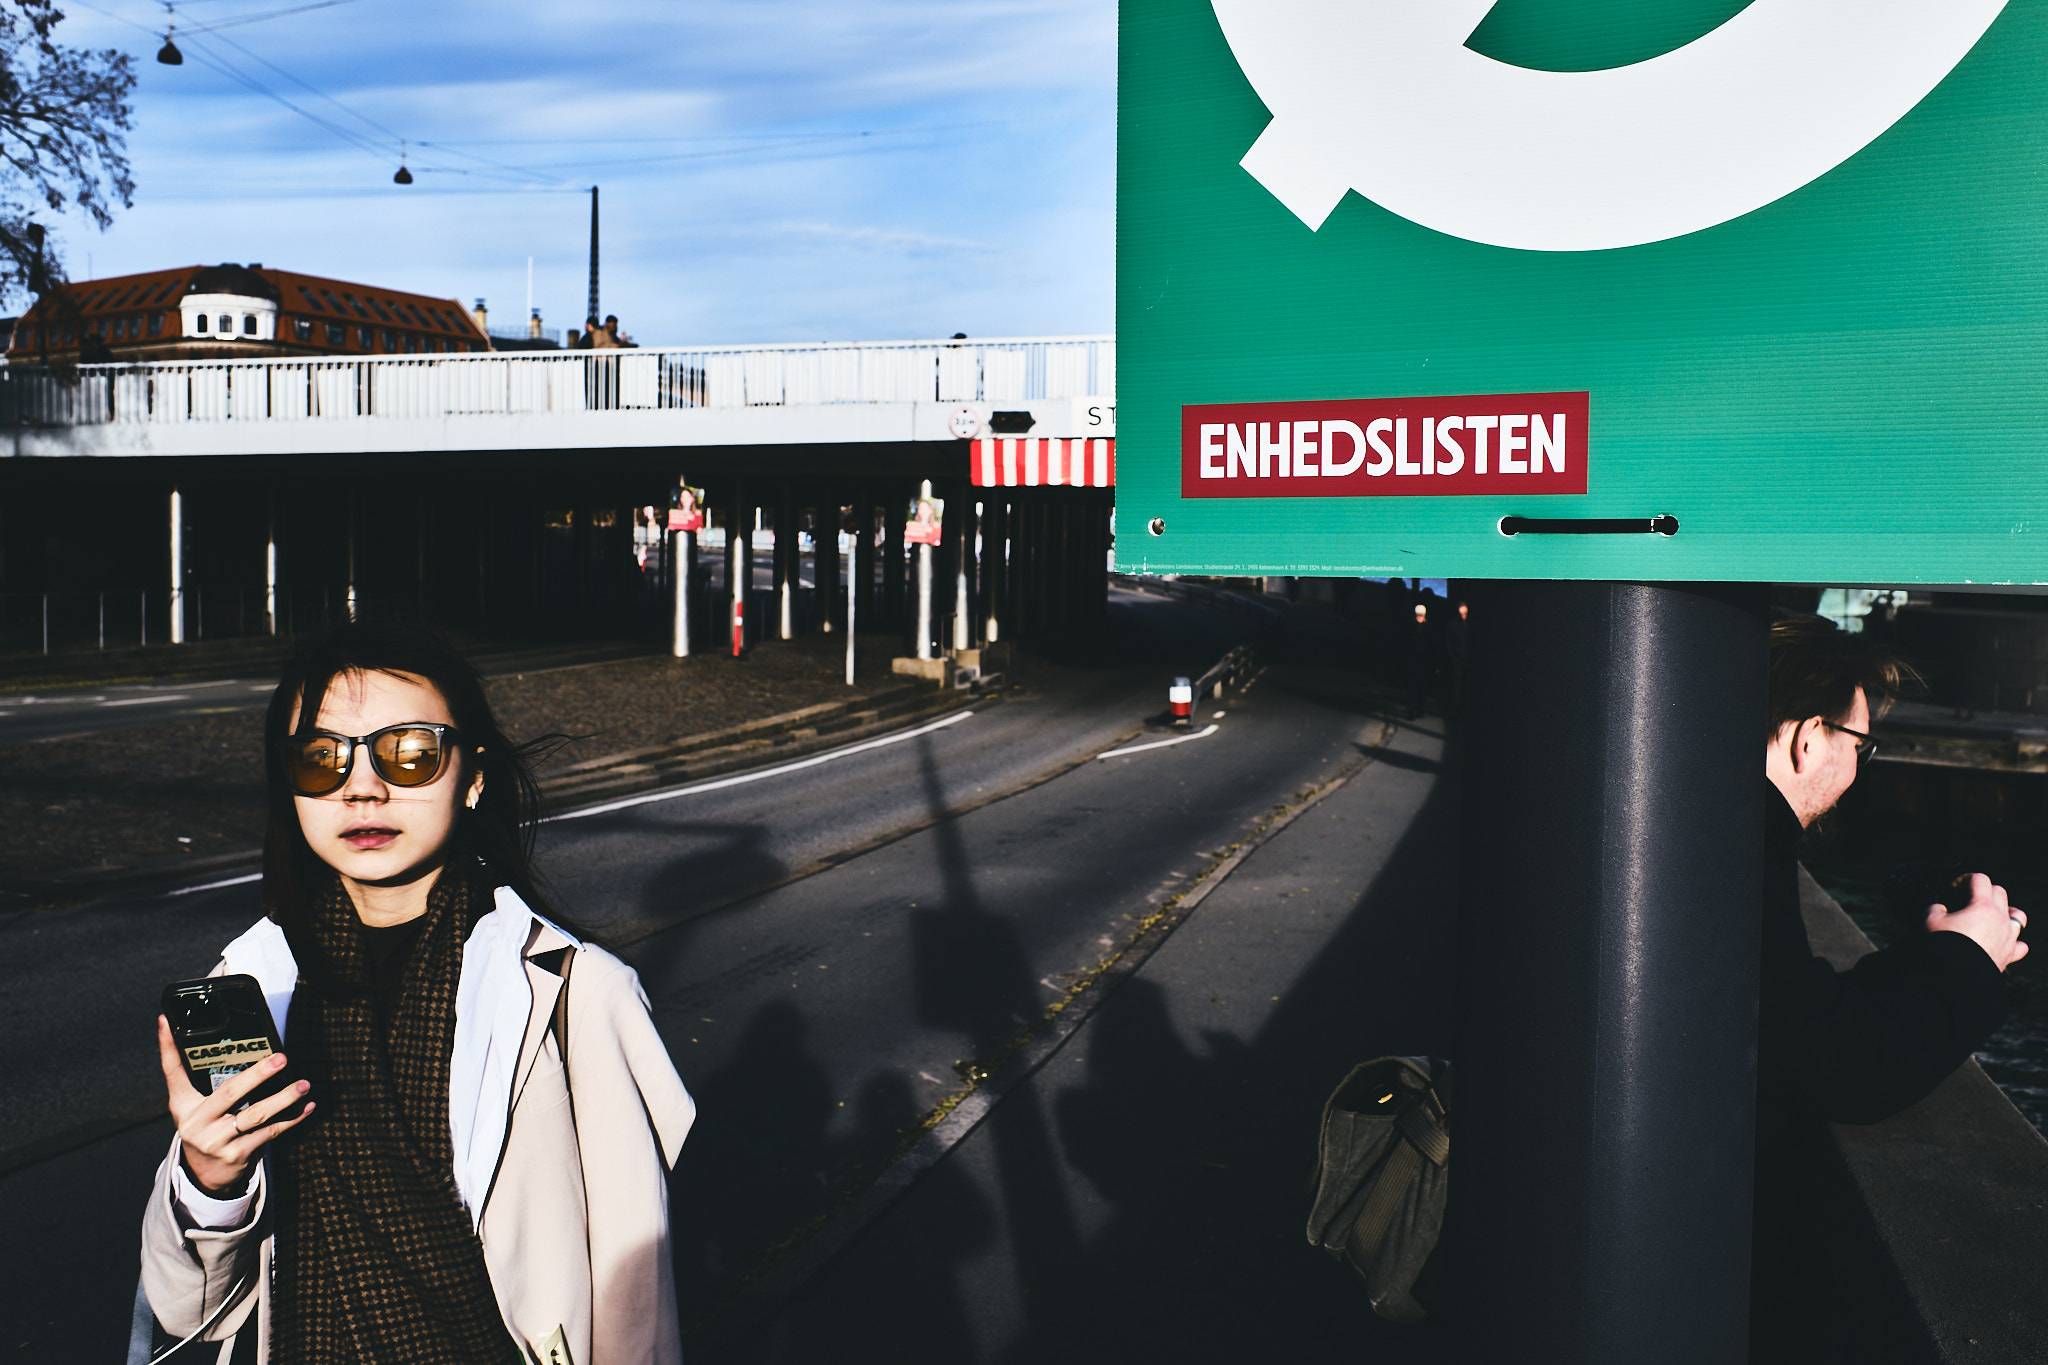 Big city life - København med valgplakat